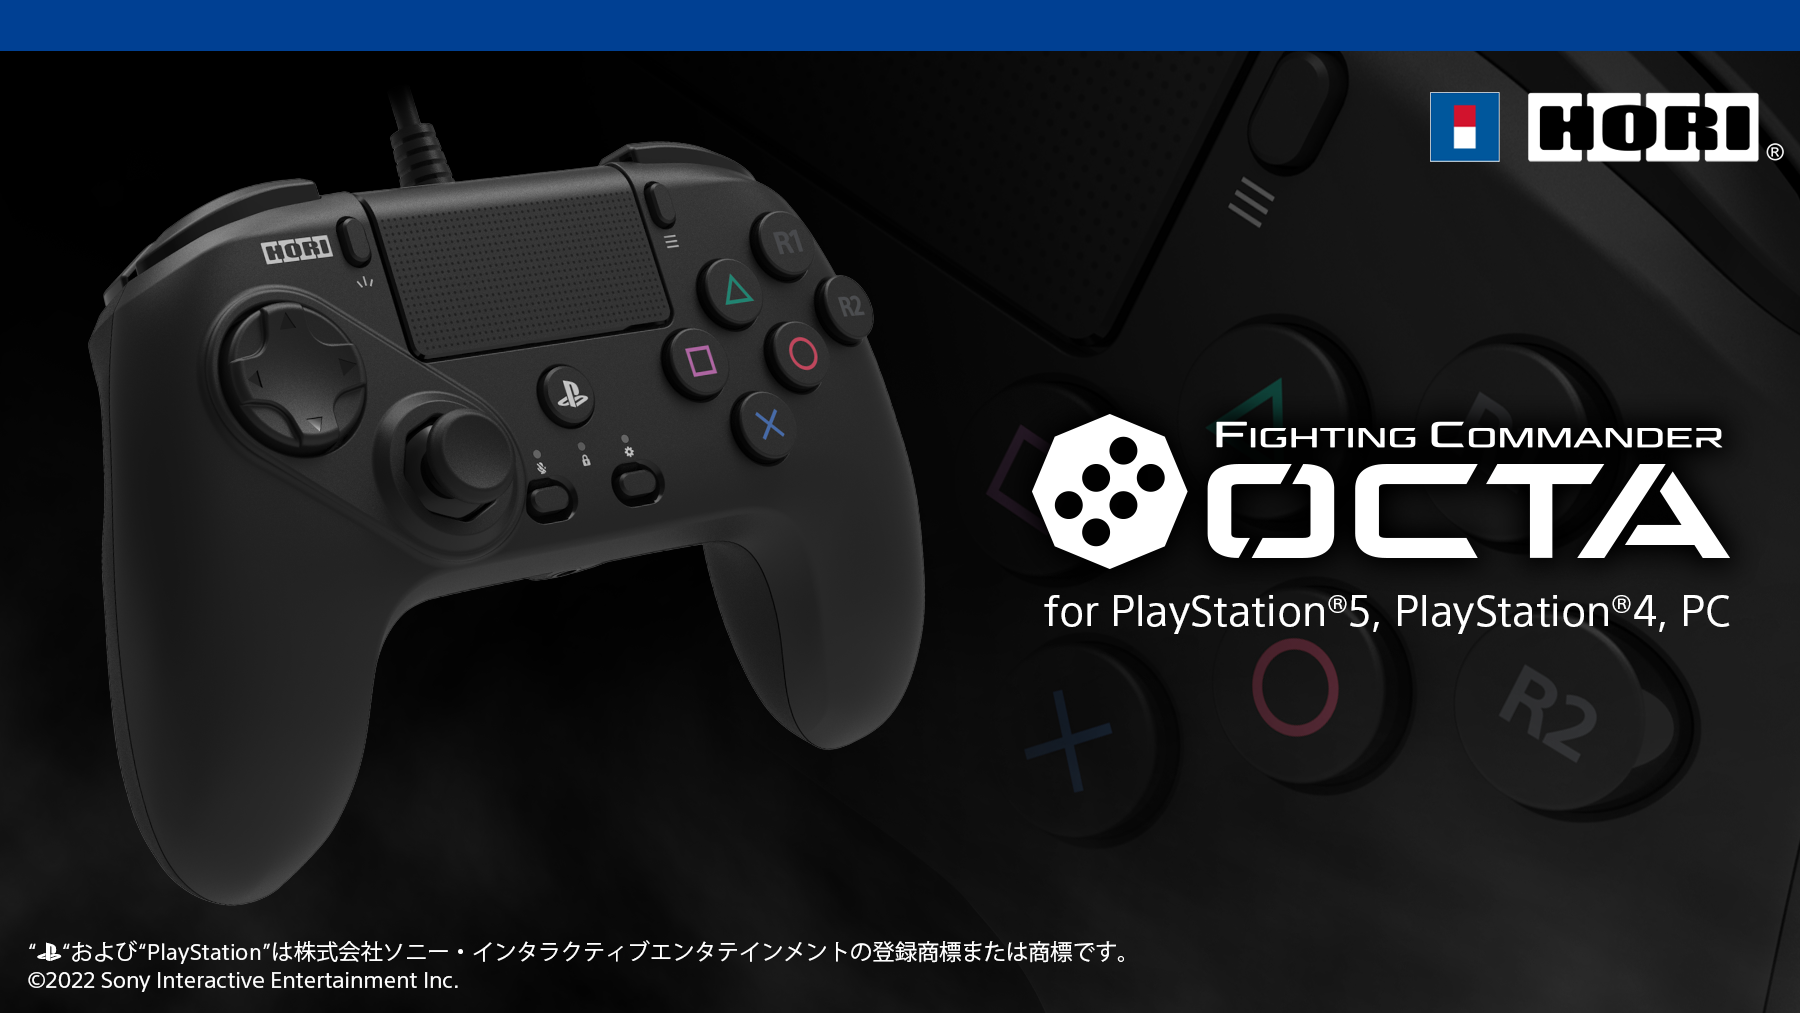 ファイティングコマンダー OCTA for PlayStation®5, PlayStation®4, PC が2022年夏発売予定！